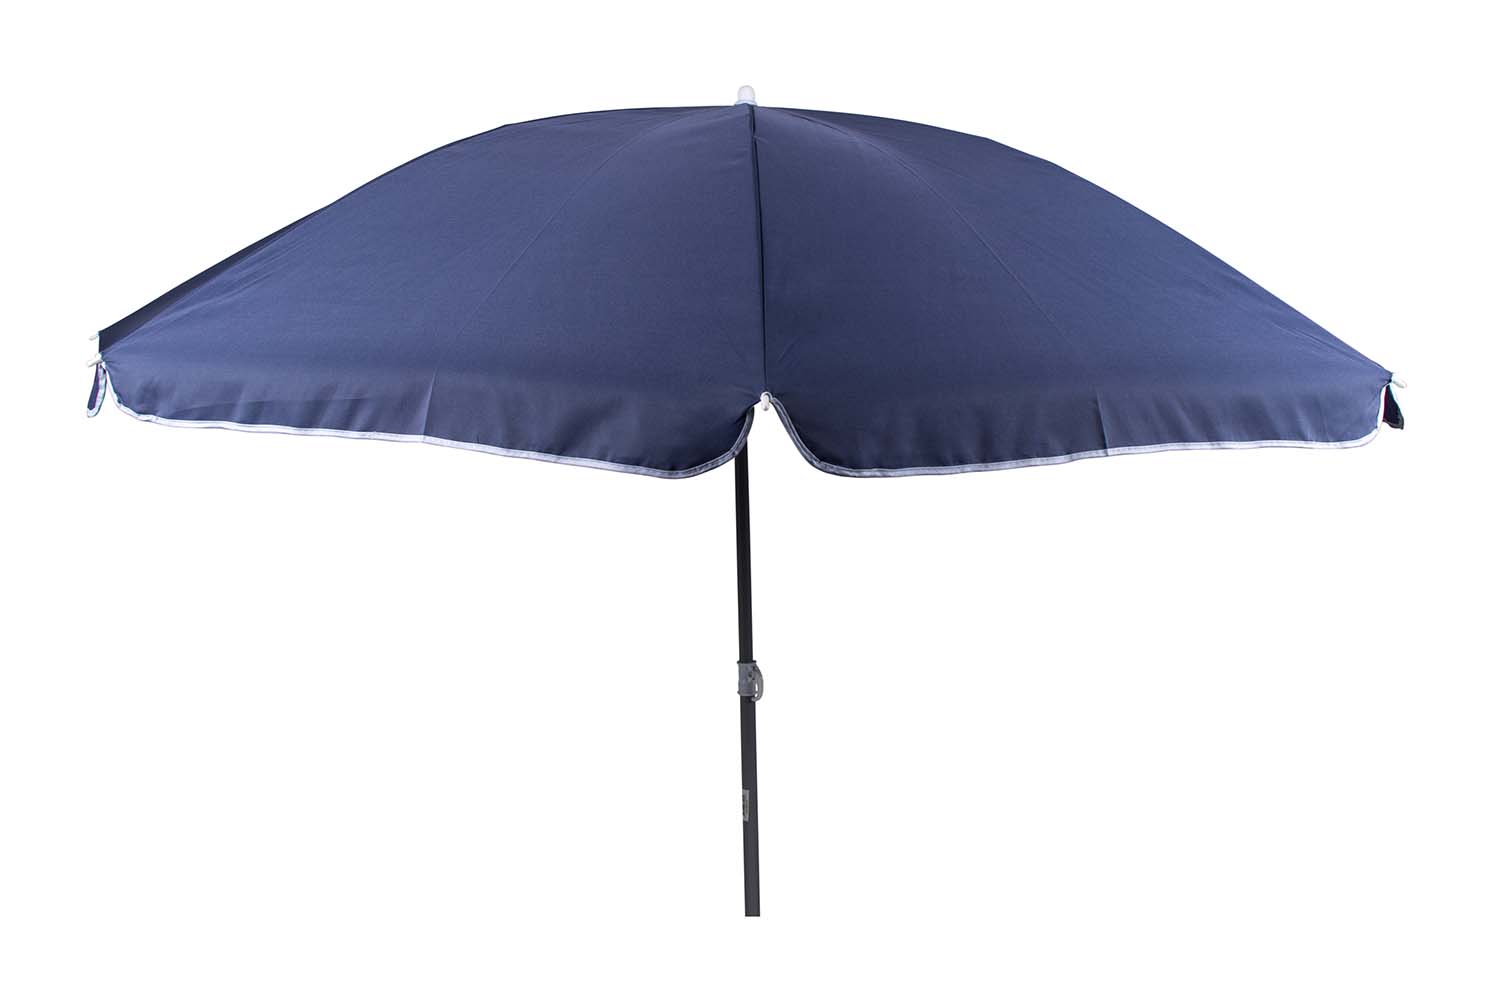 7267234 Een stijlvolle en stevige parasol met stalen frame. Het 160 gr/m² polyester doek biedt bescherming tegen schadelijke zonnestraling. De steel is deelbaar, in hoogte verstelbaar en voorzien van een knikarm zodat het doek richting de zon kan worden gebogen. Gemakkelijk mee te nemen (Ø15x100 cm). De steel van de parasol heeft een diameter van 32 millimeter.